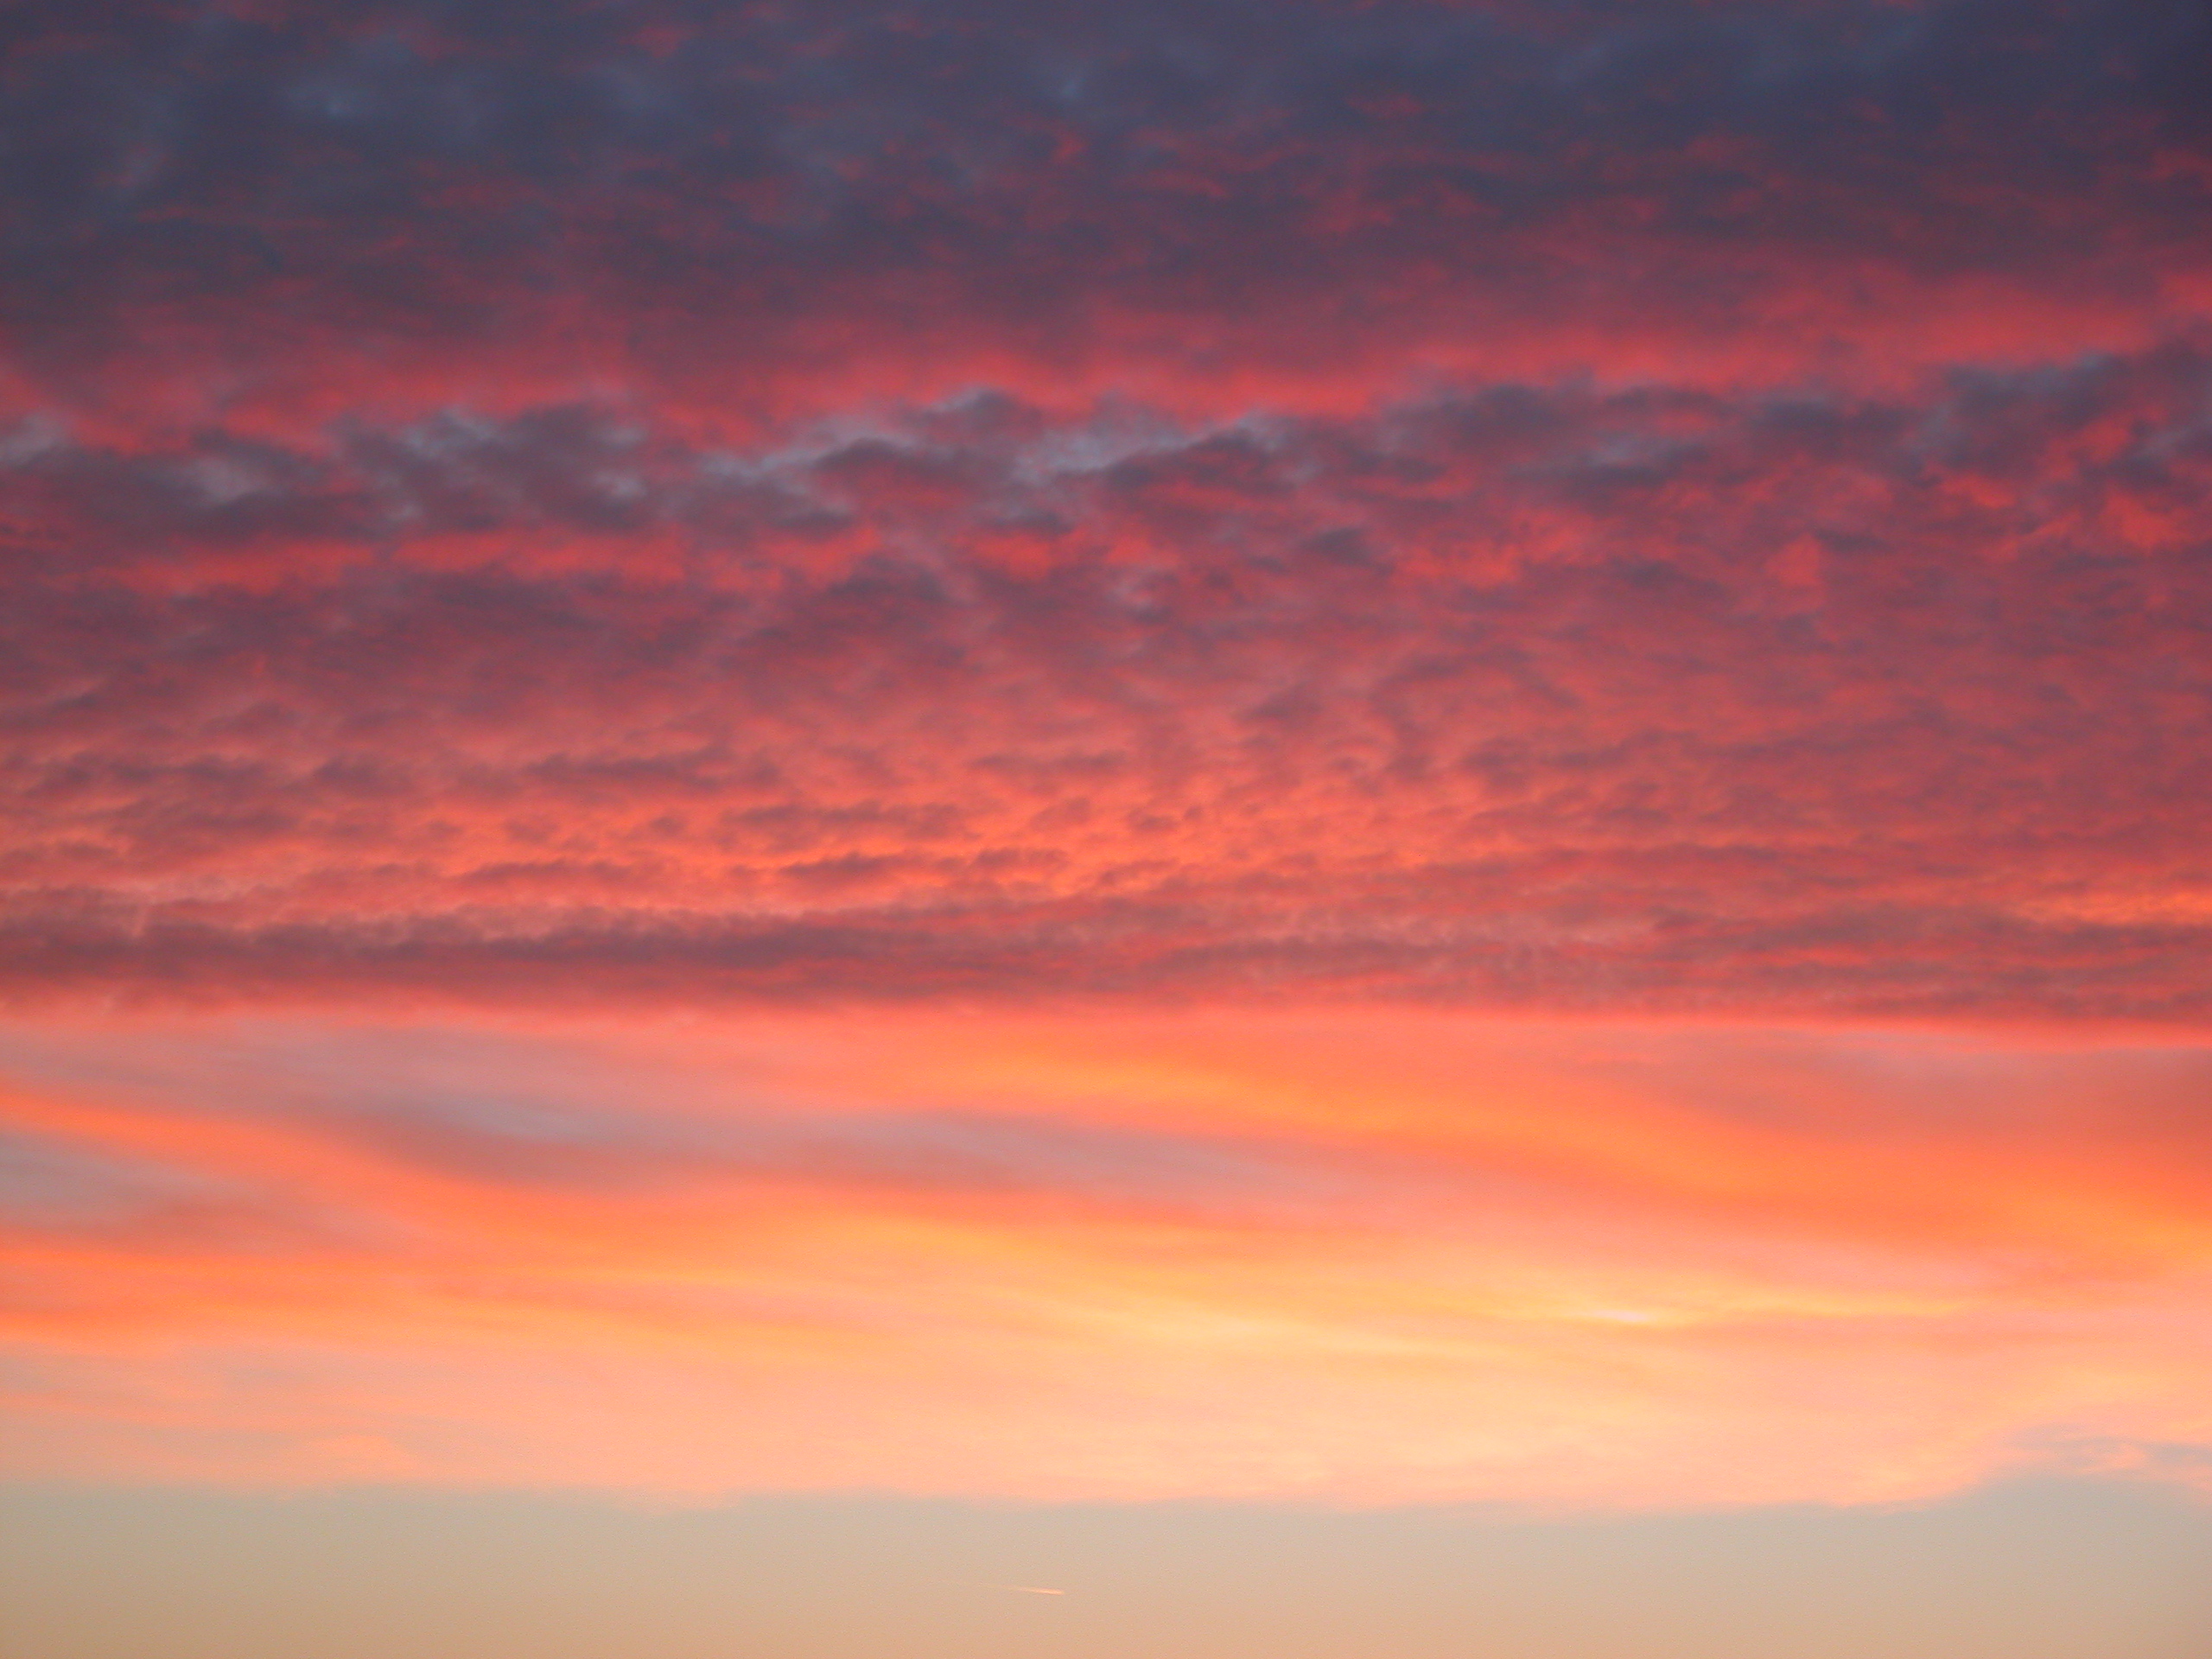 Imageafter Photos Elements Texture Cloud Clouds Sunset Sunrise